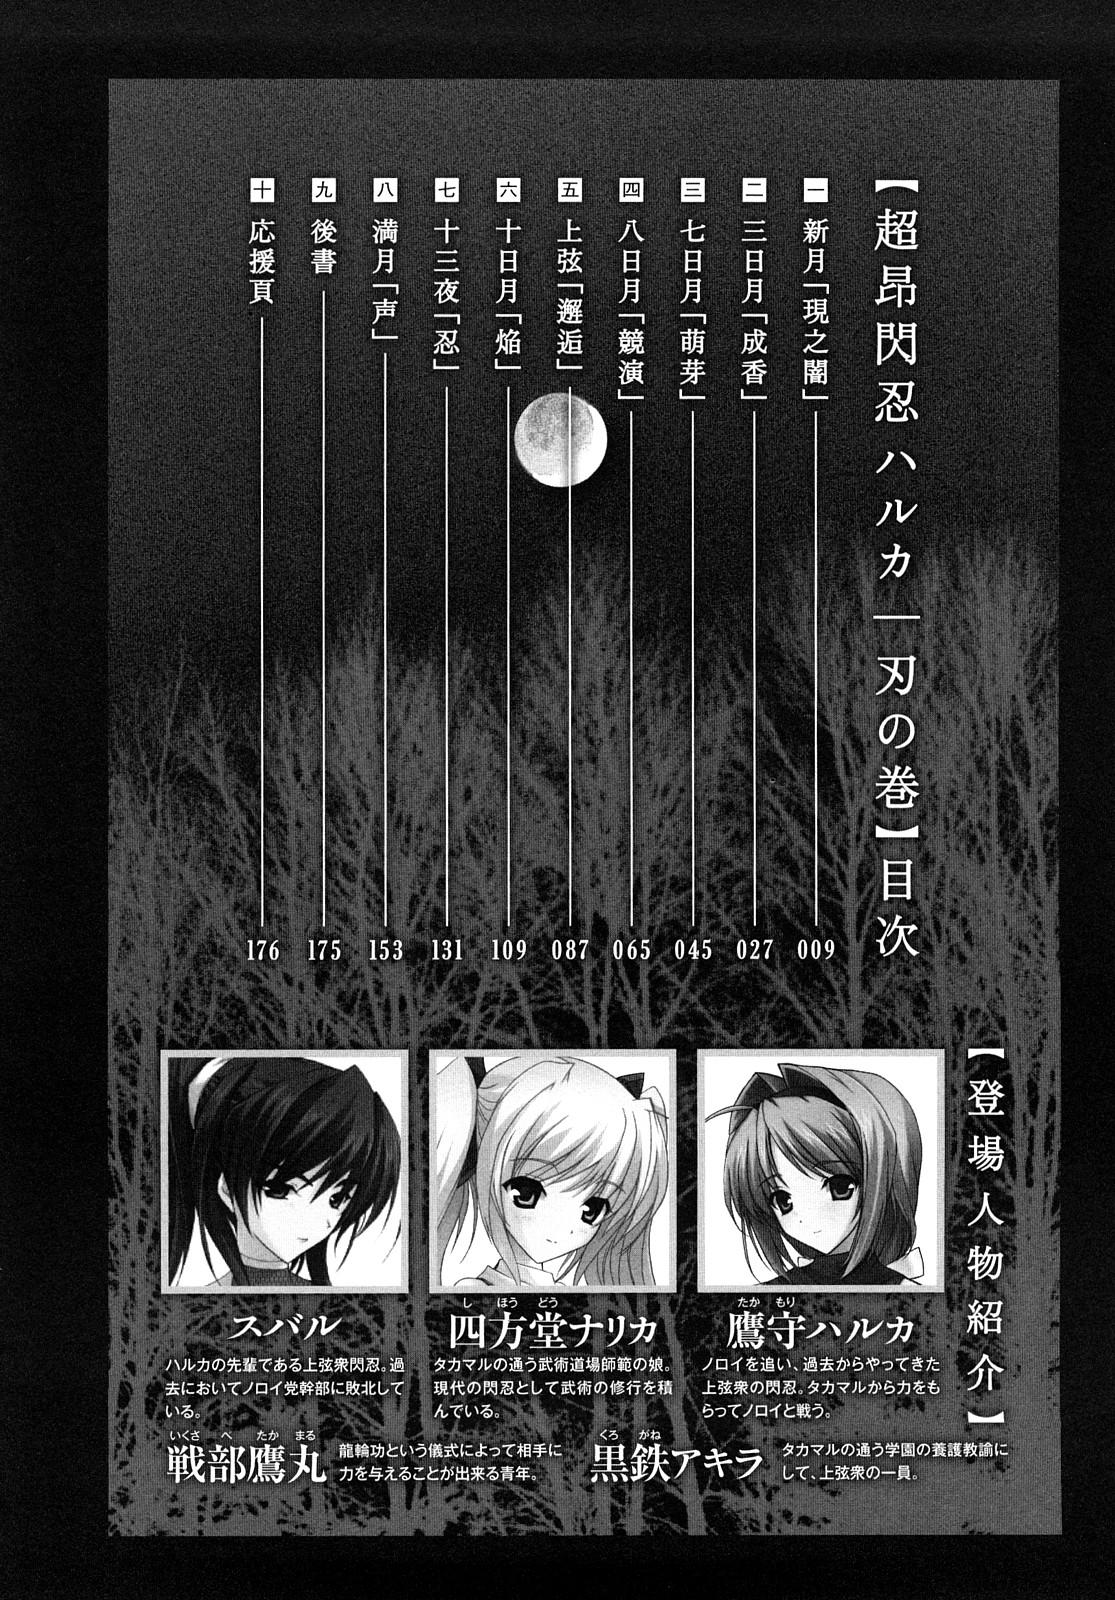 Dominatrix Choukousennin Haruka: Yaiba no Maki - Beat blades haruka Ecchi - Page 9